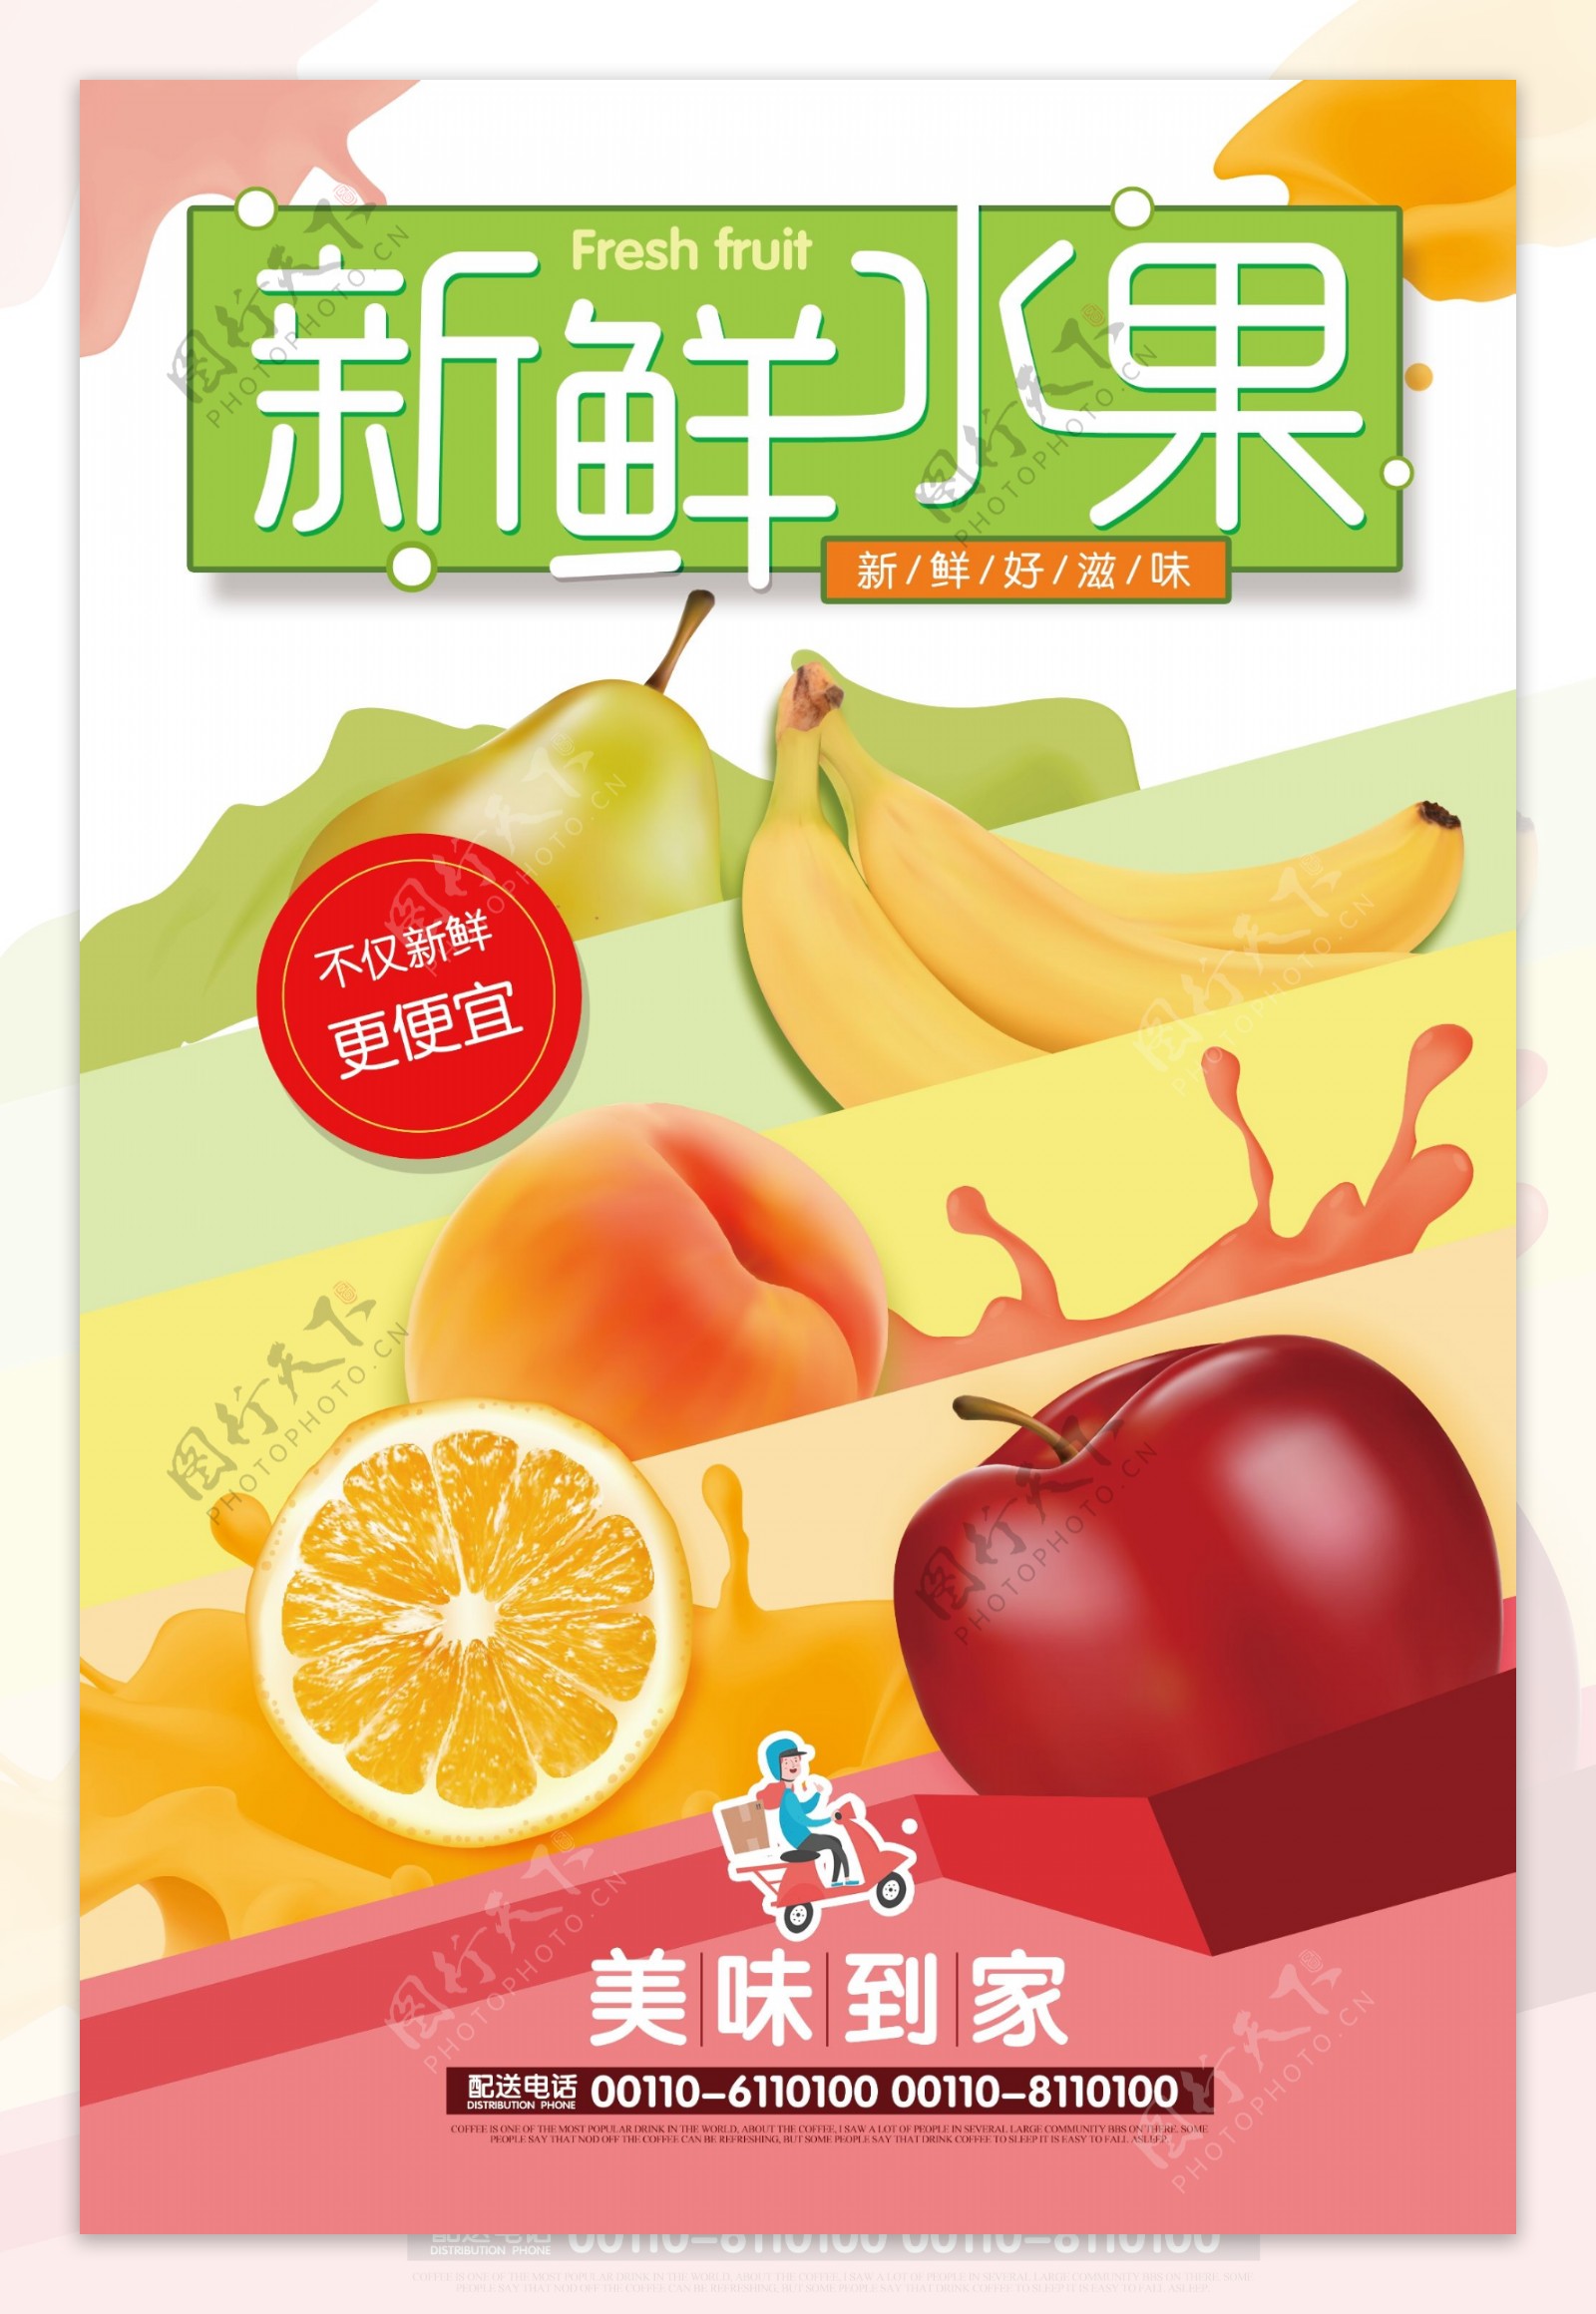 夏季新鲜水果送到家海报